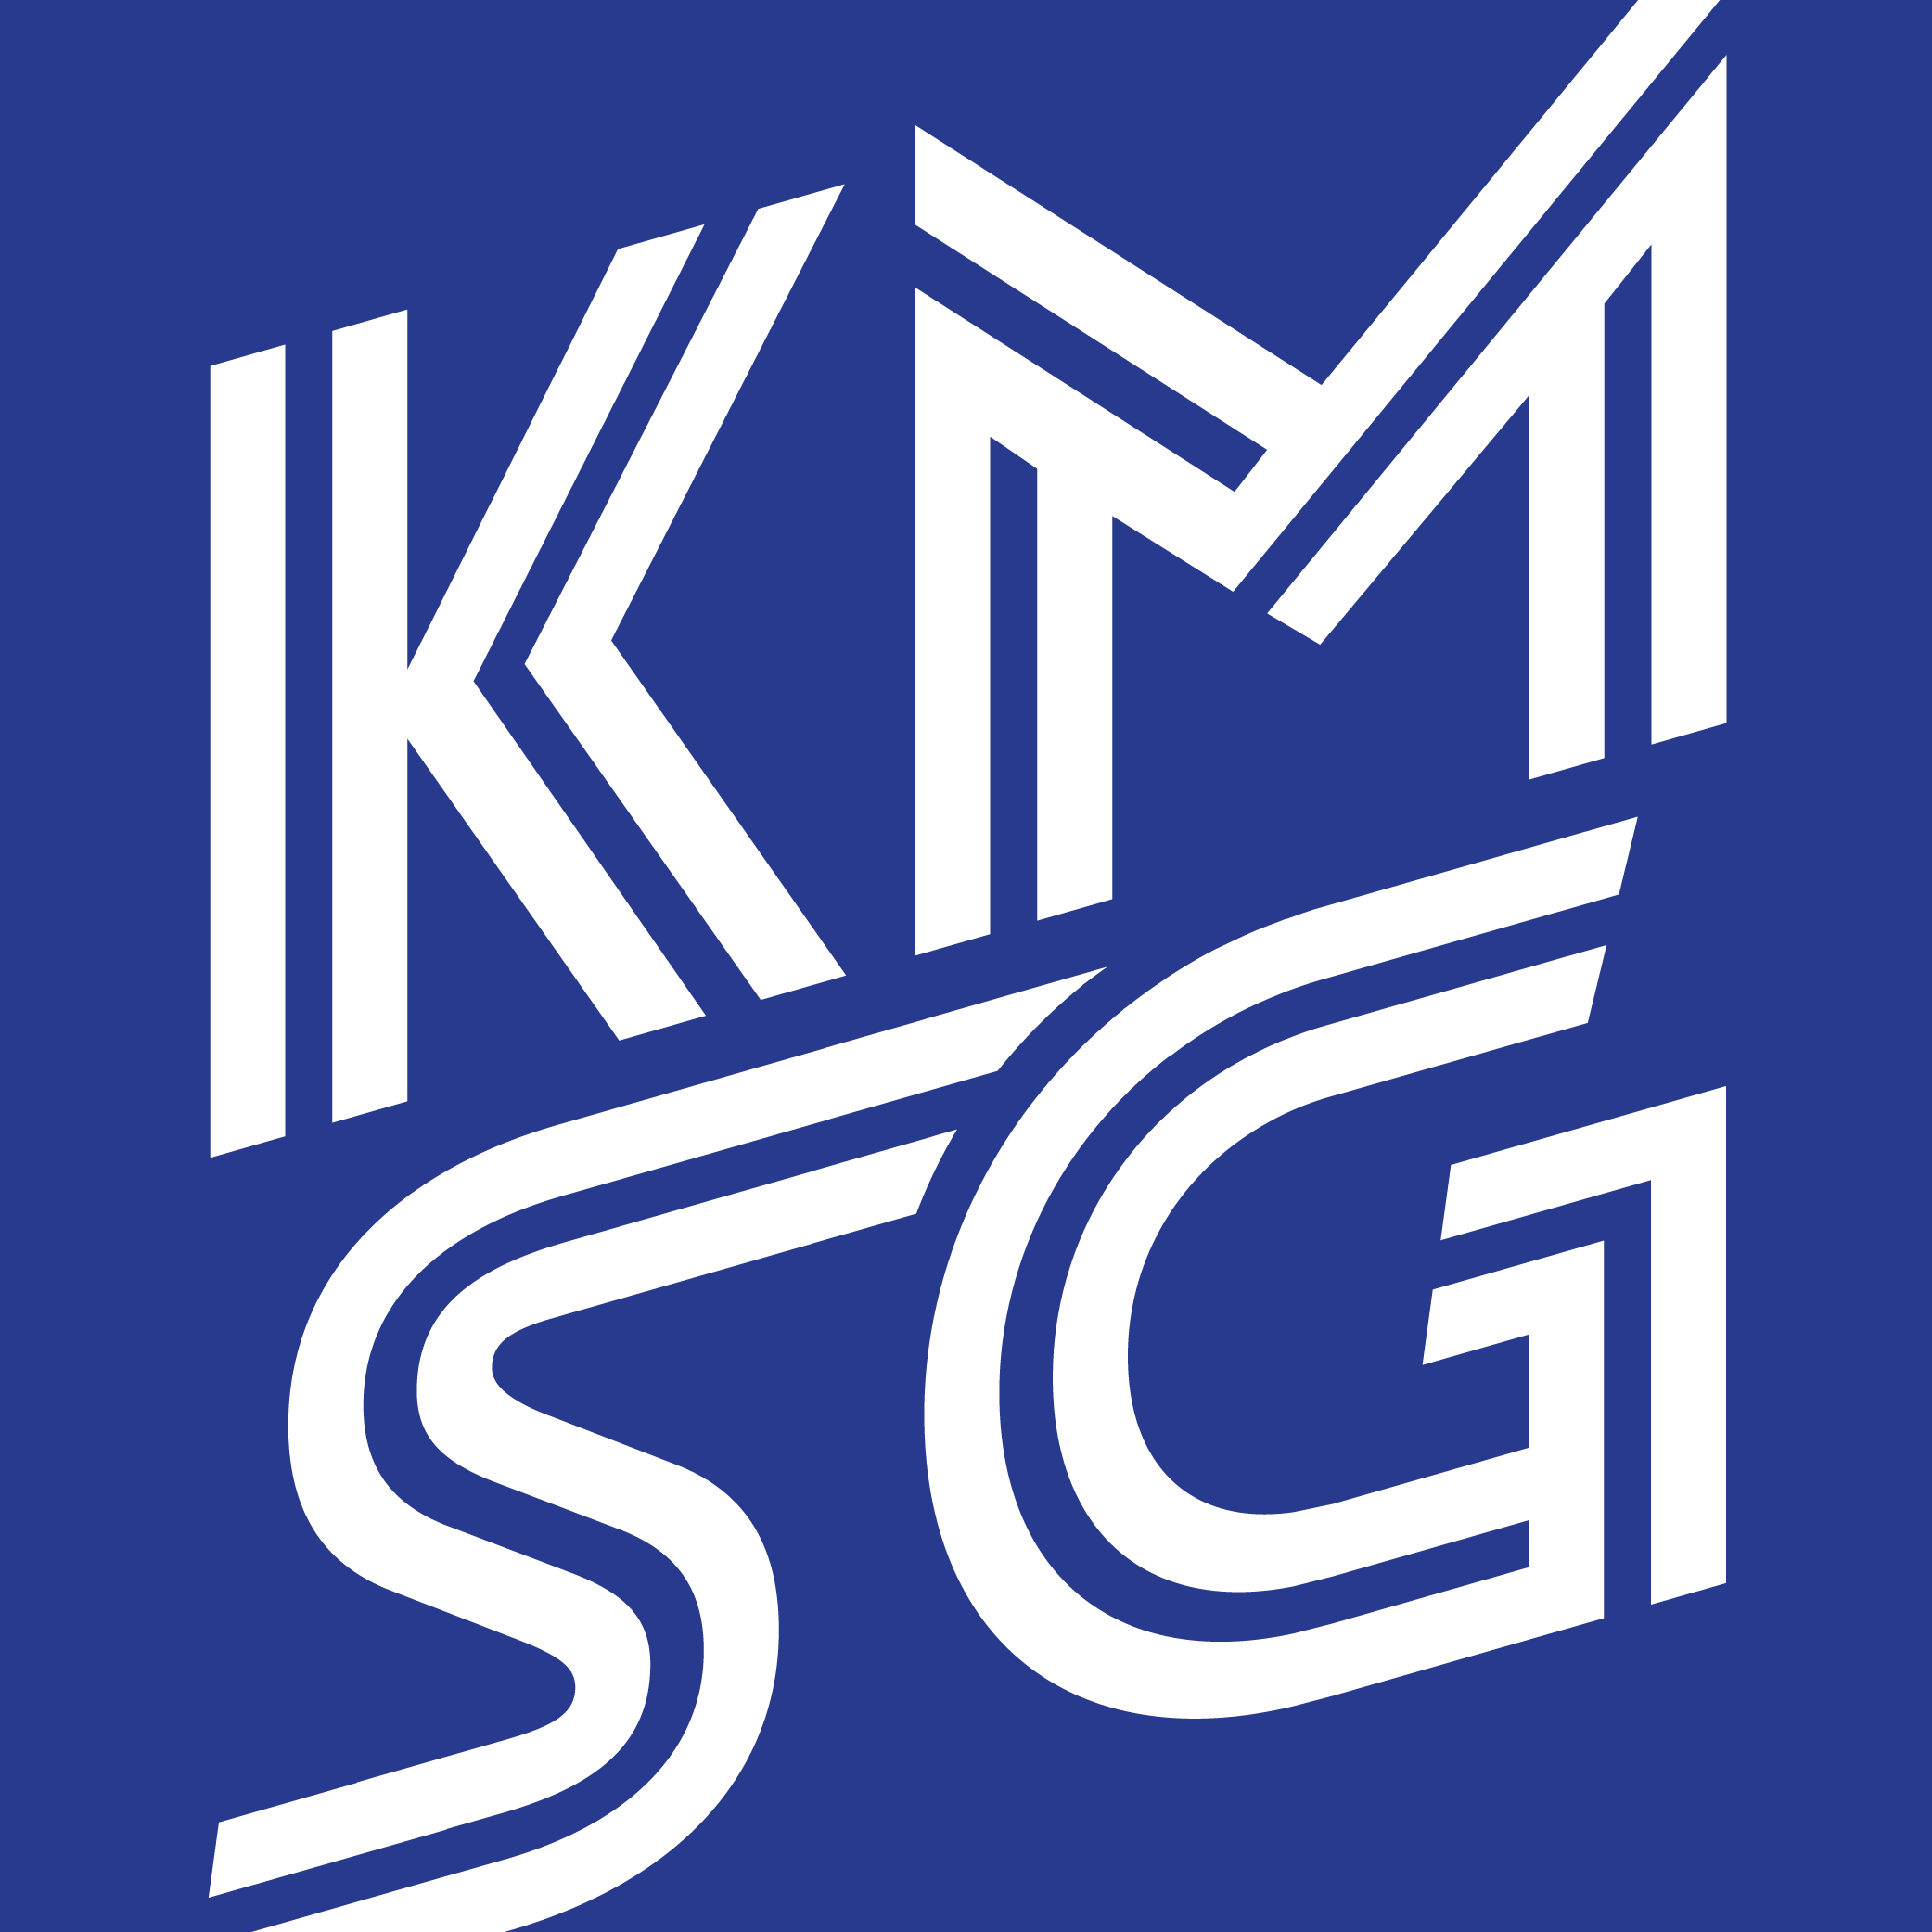 KMSG logo suite_KMSG logo.png